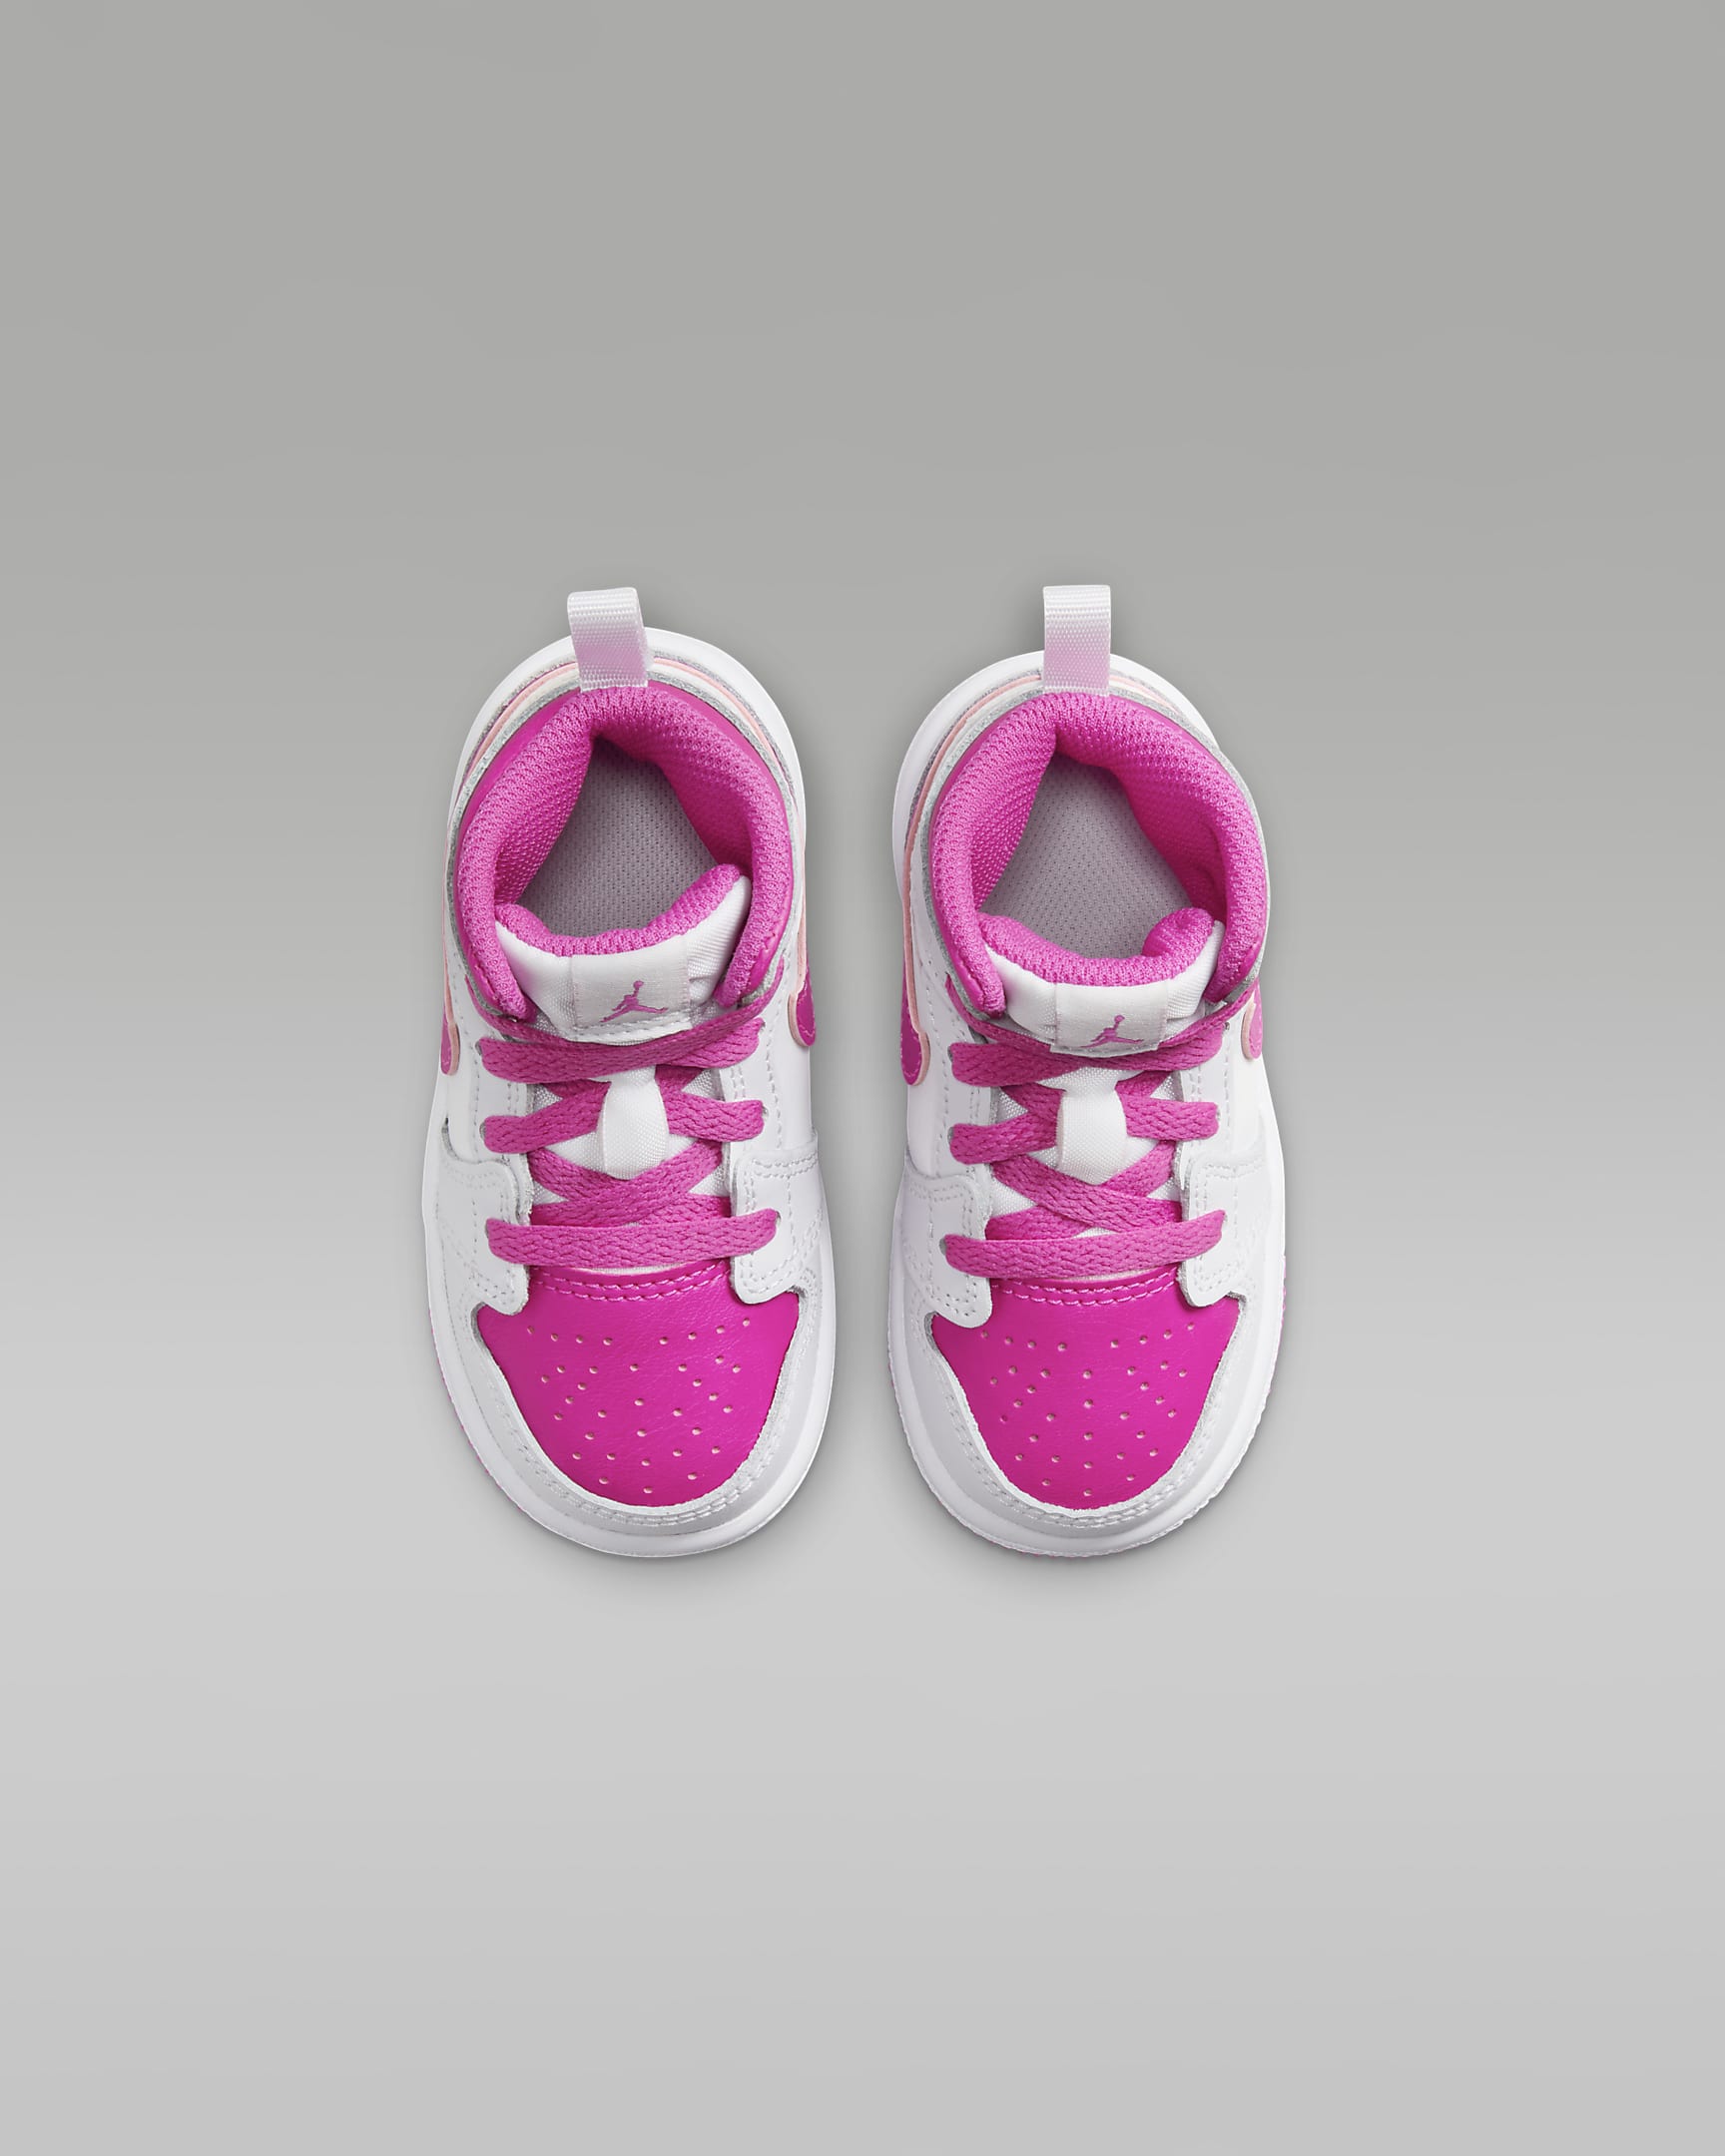 Jordan 1 Mid Baby/Toddler Shoes - Iris Whisper/White/Fire Pink